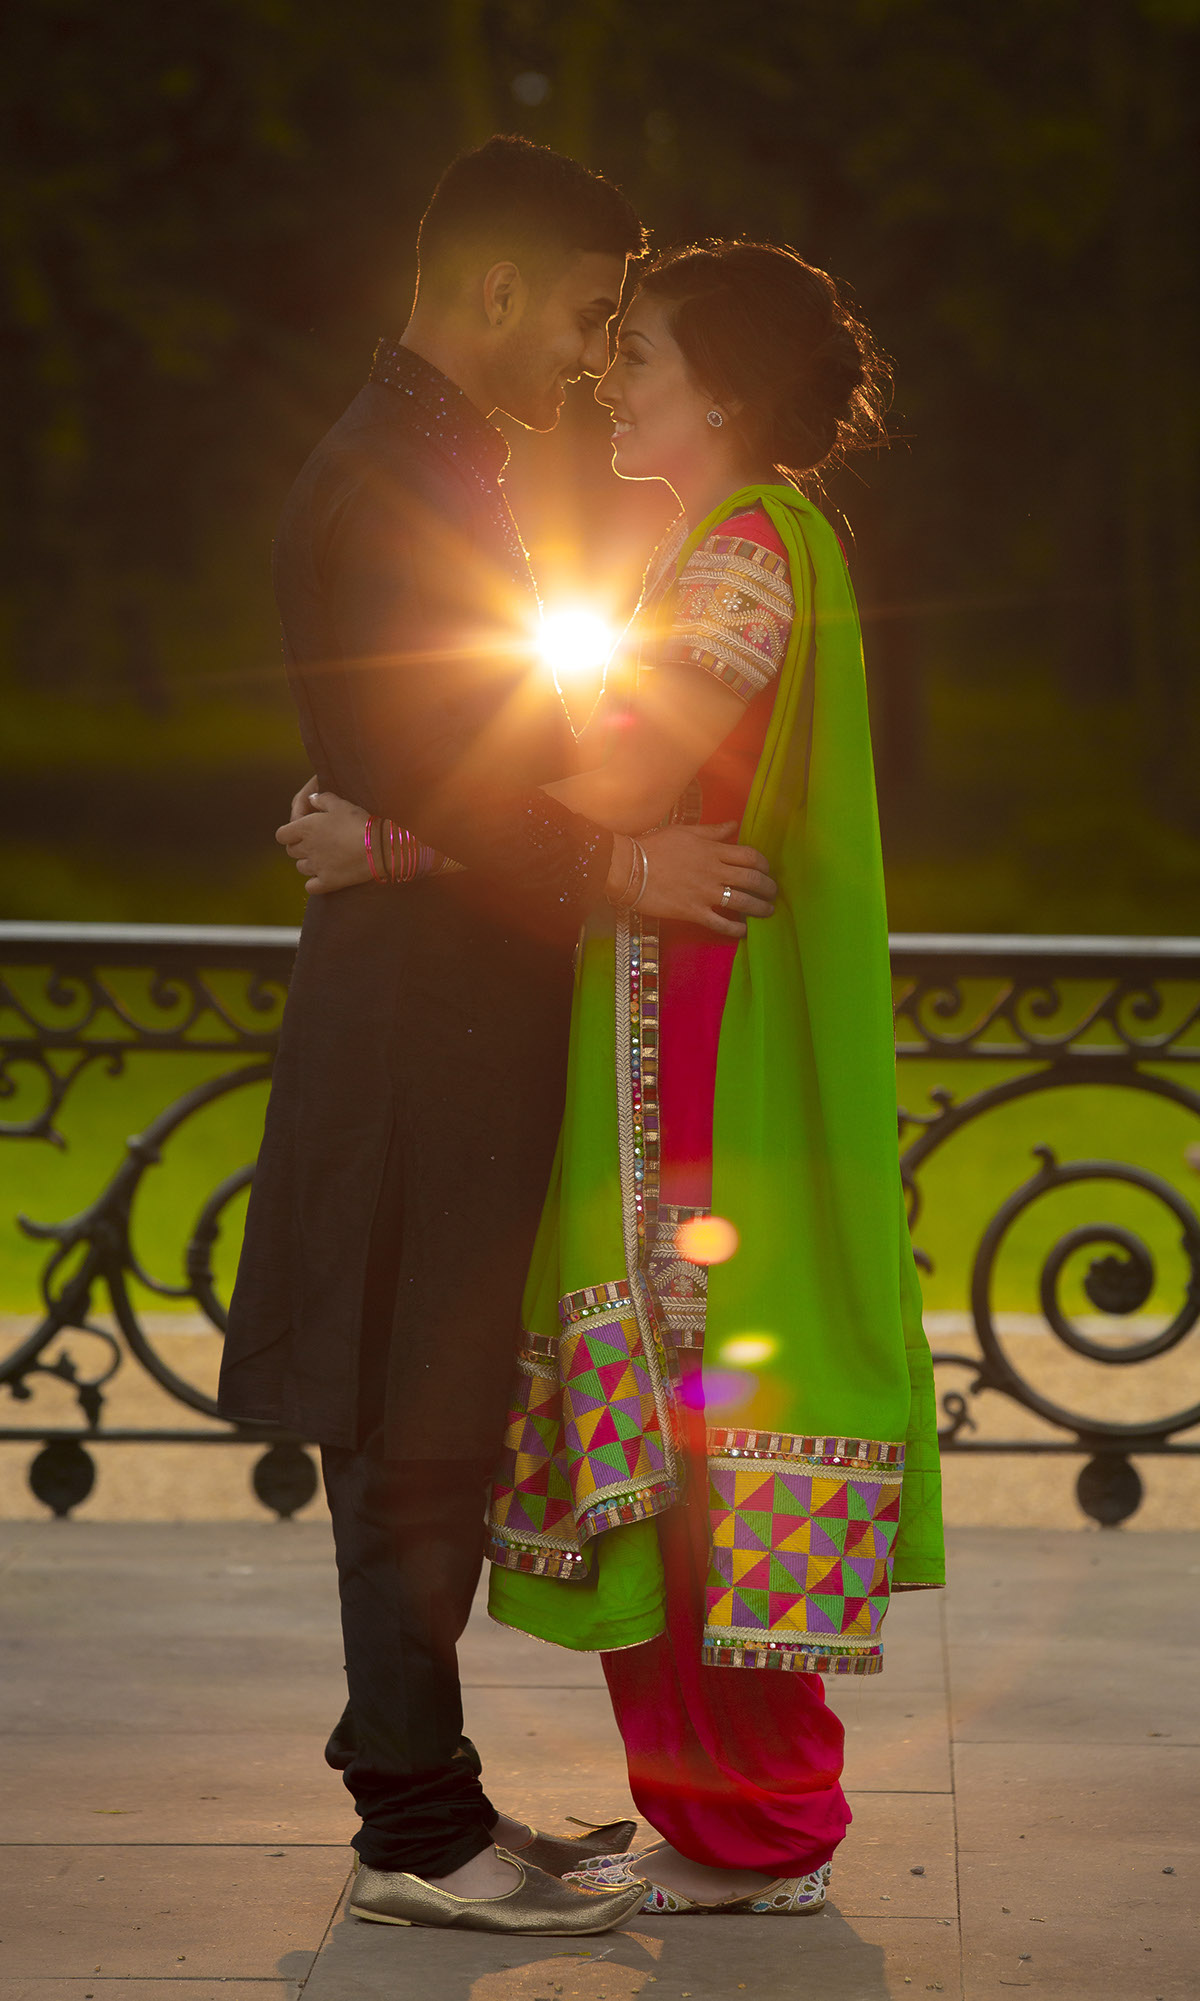 Pre Wedding Photoshoots Asian wedding photography indian weddings newcastle upon tyne Sikh weddings hindu weddings English Weddings Weddings Muslim Weddings